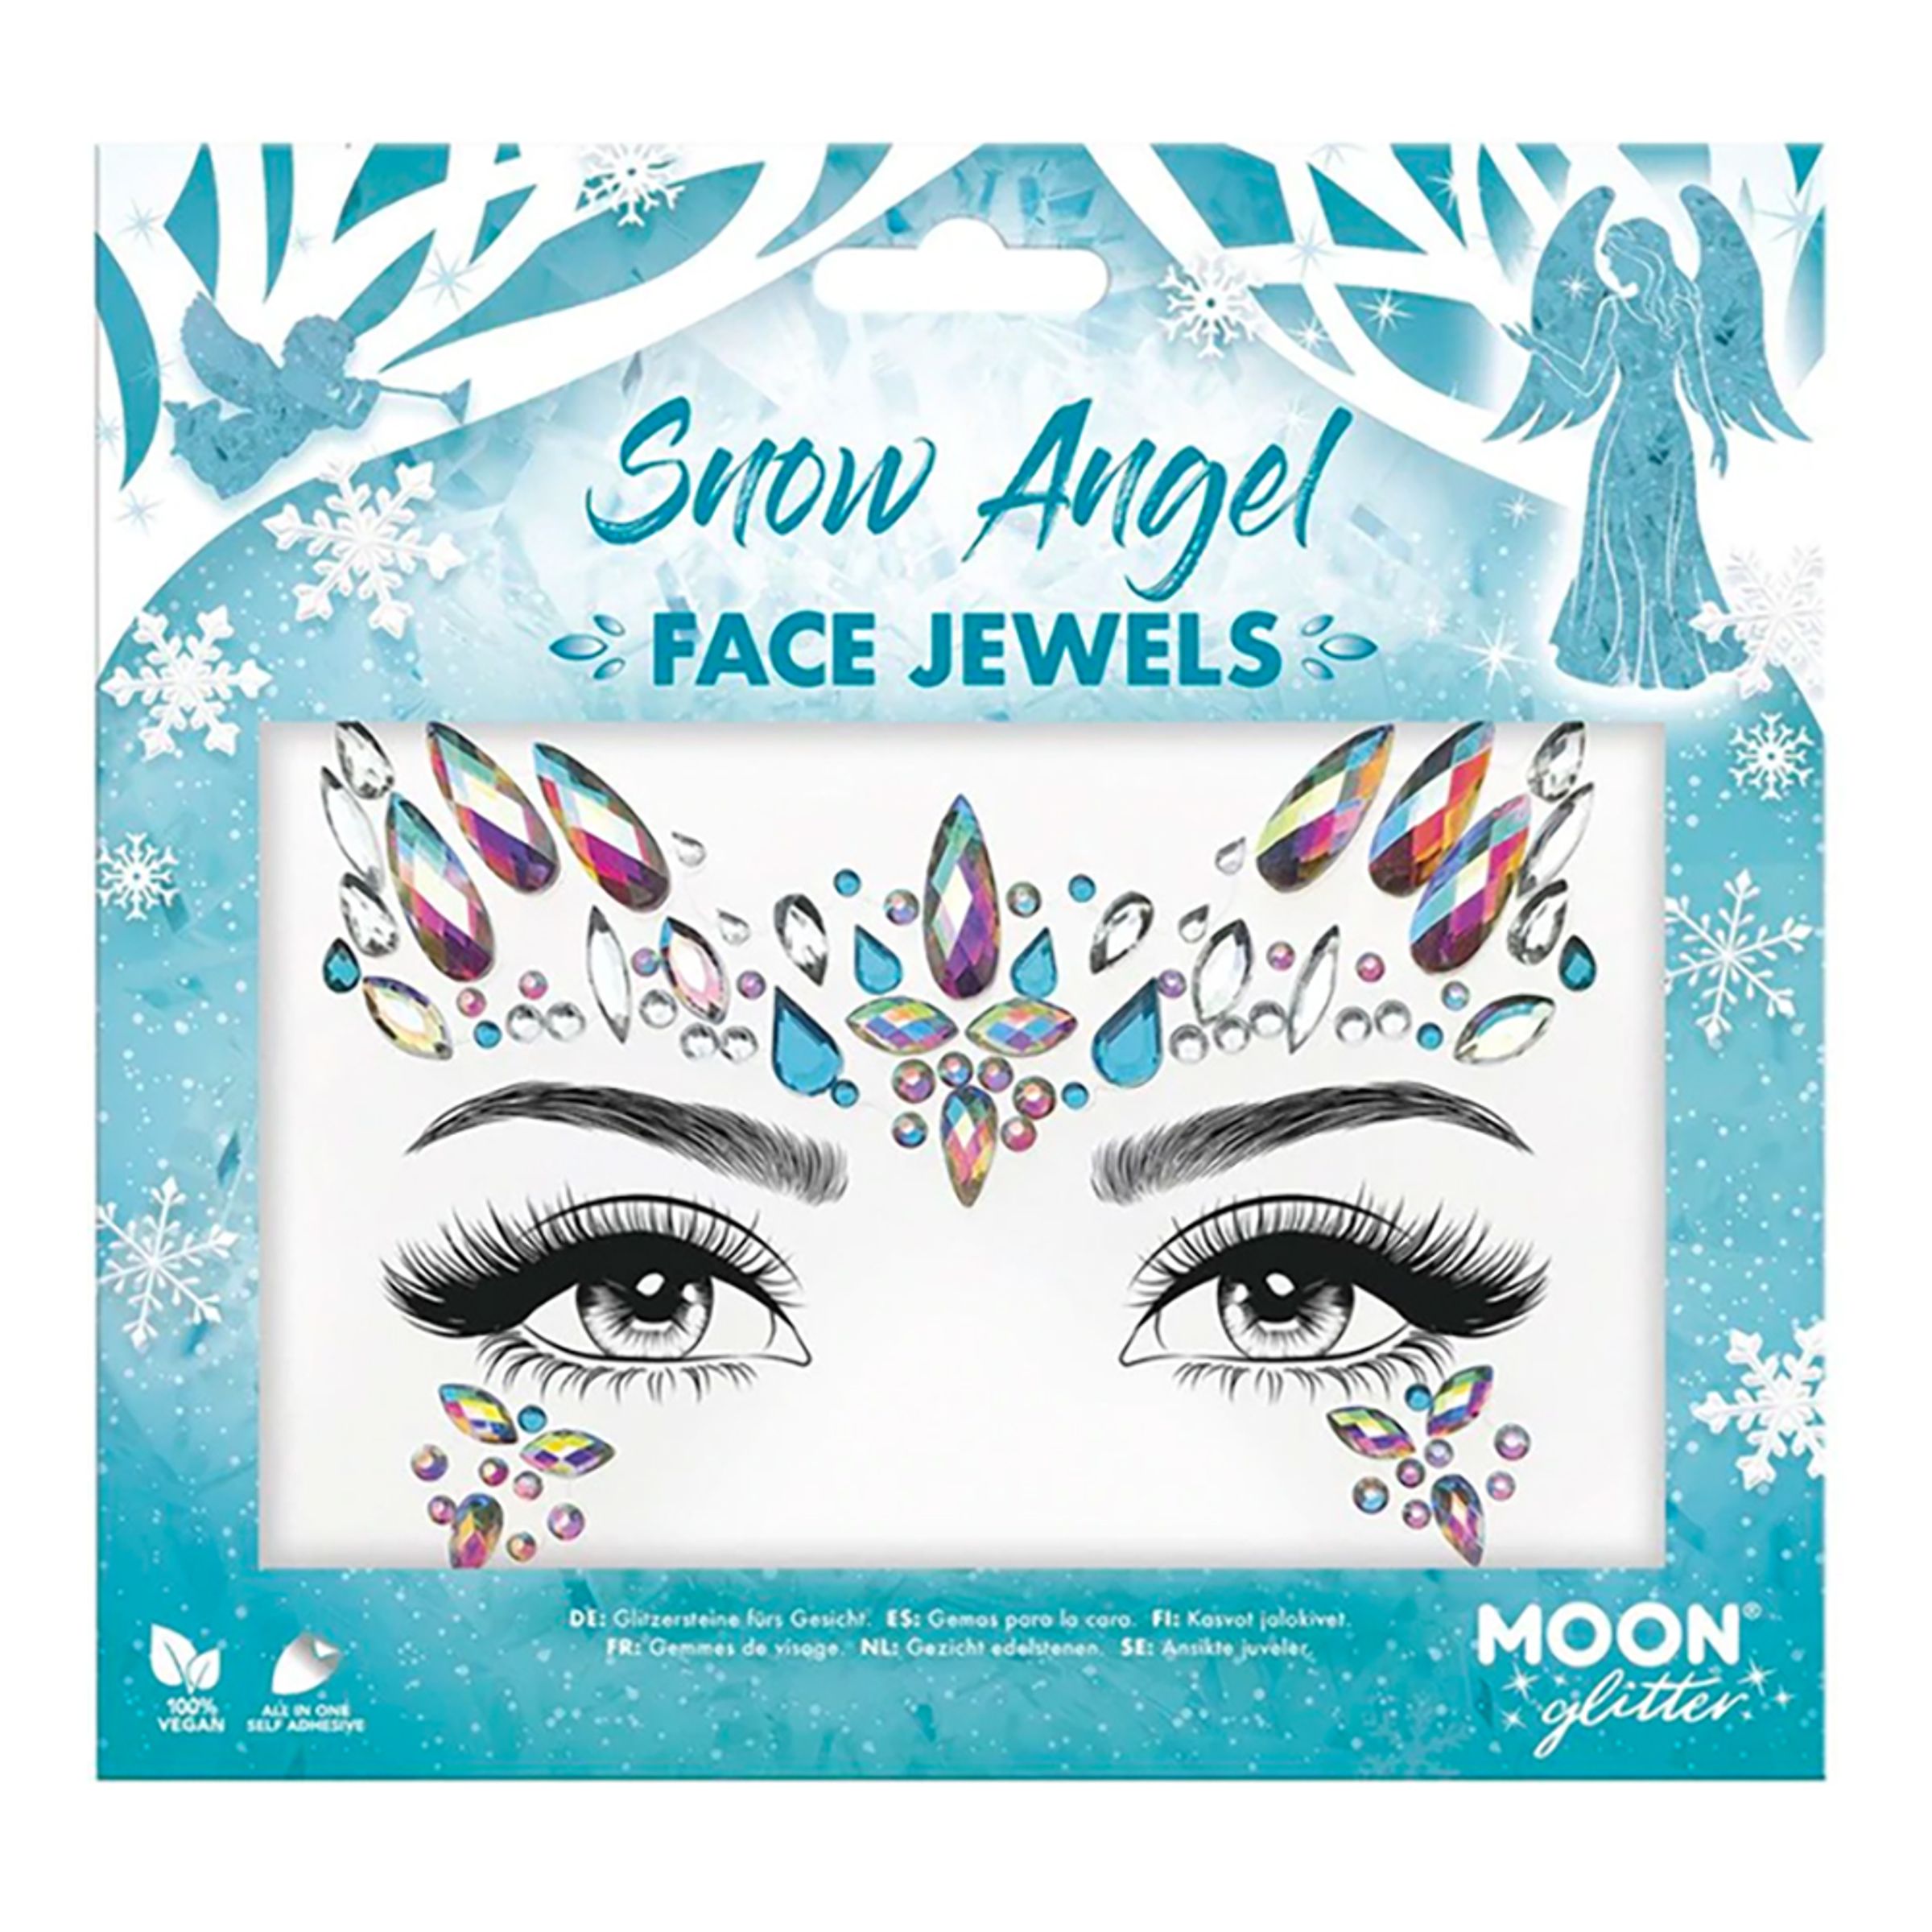 Läs mer om Face Jewels Snow Angel